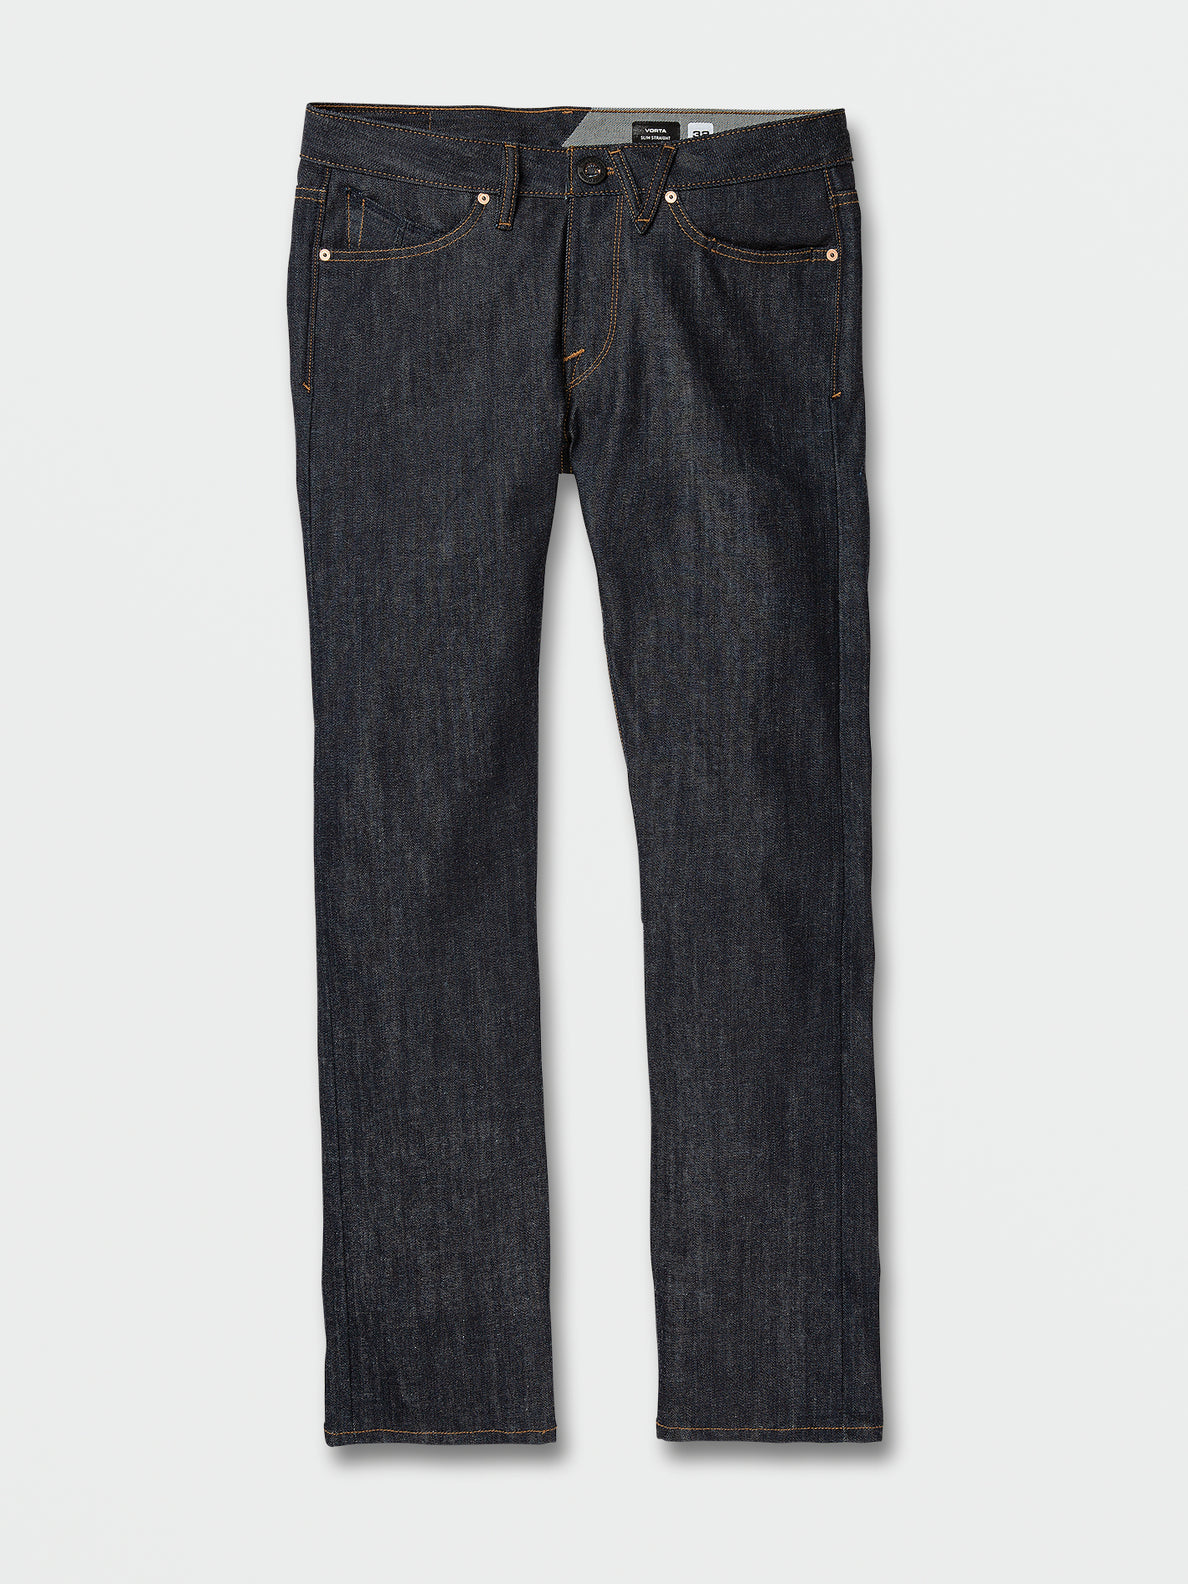 Vorta Slim Fit Jeans - Rinse (A1931501_RNS) [F]